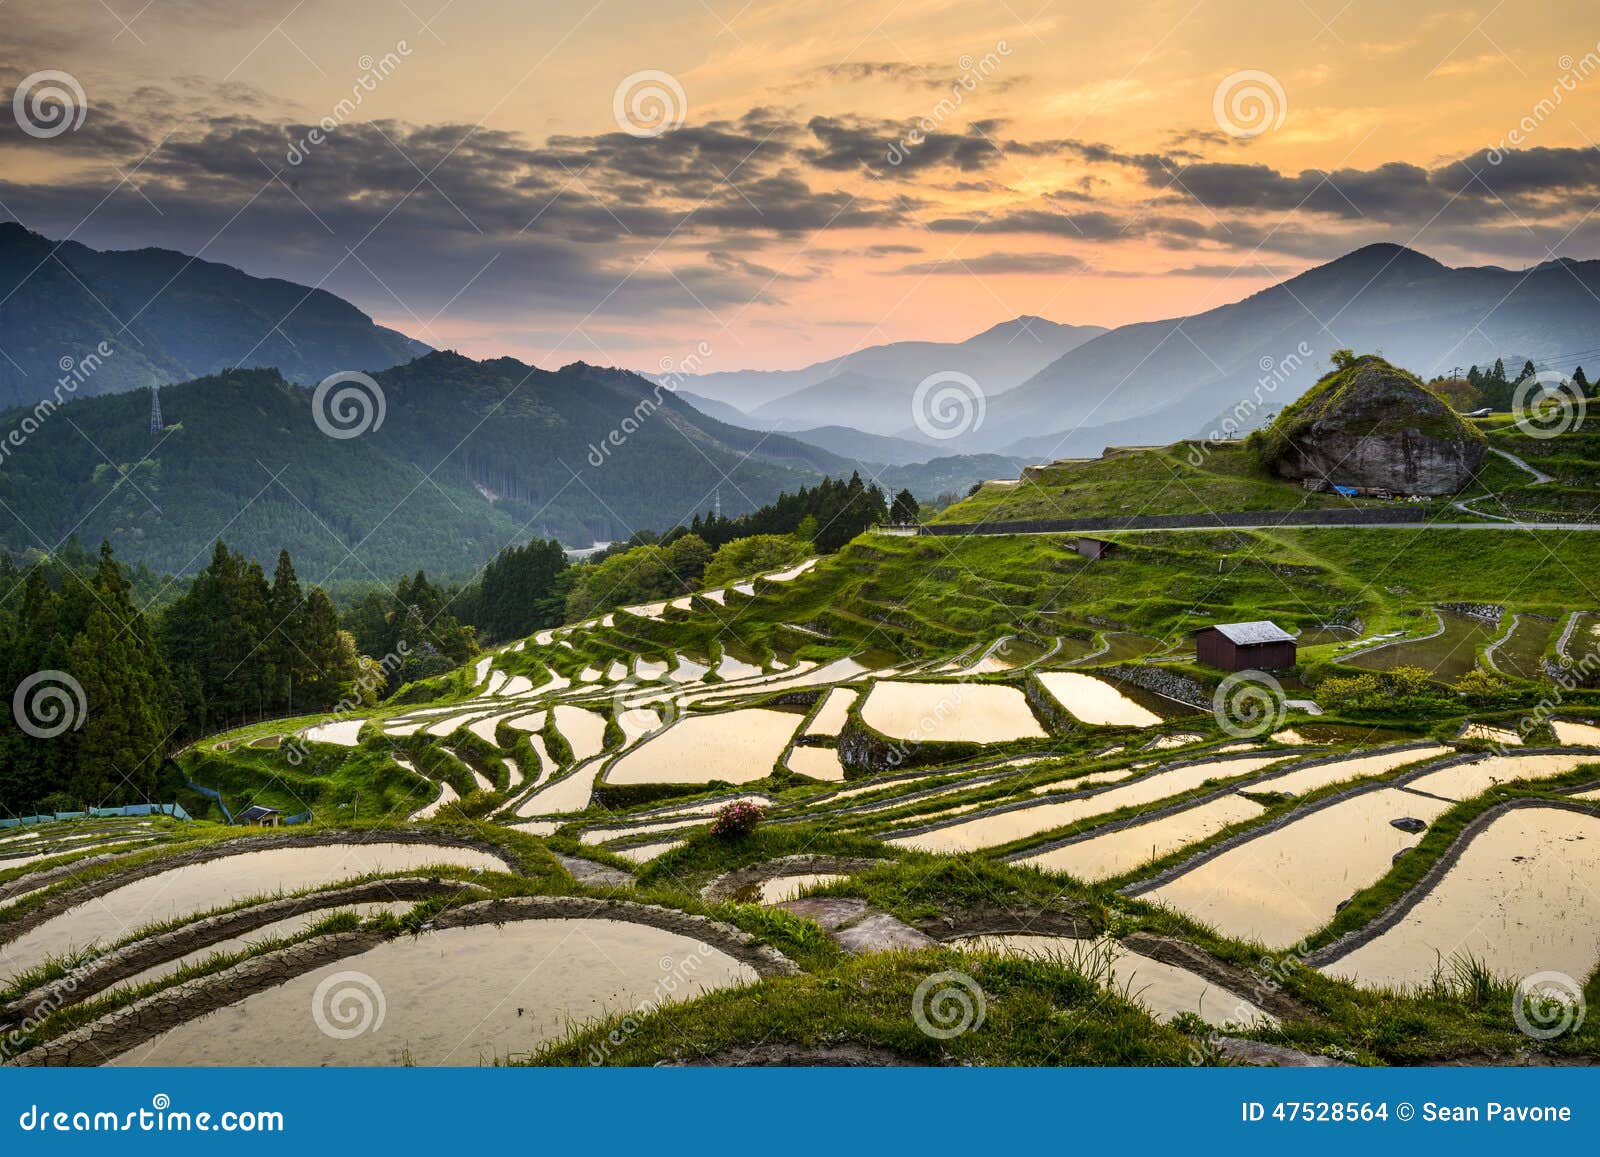 rice paddies in japan